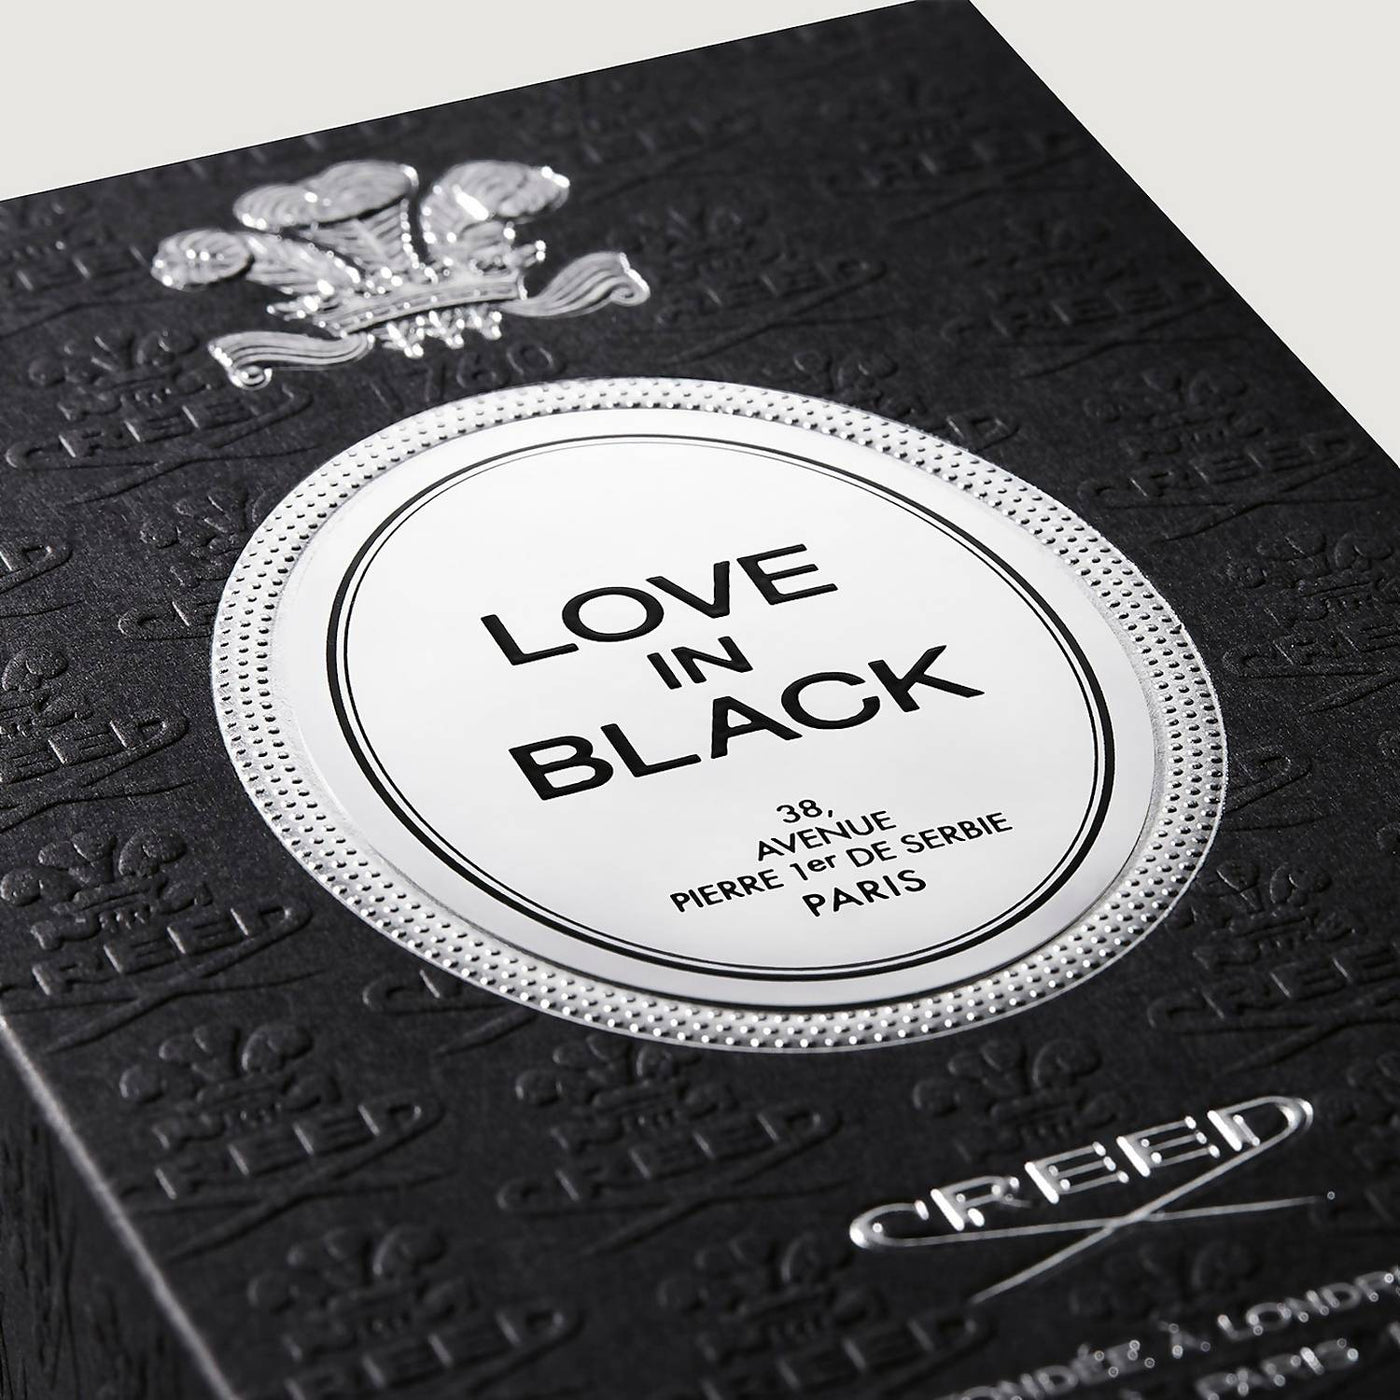 LOVE IN BLACK - Millesime